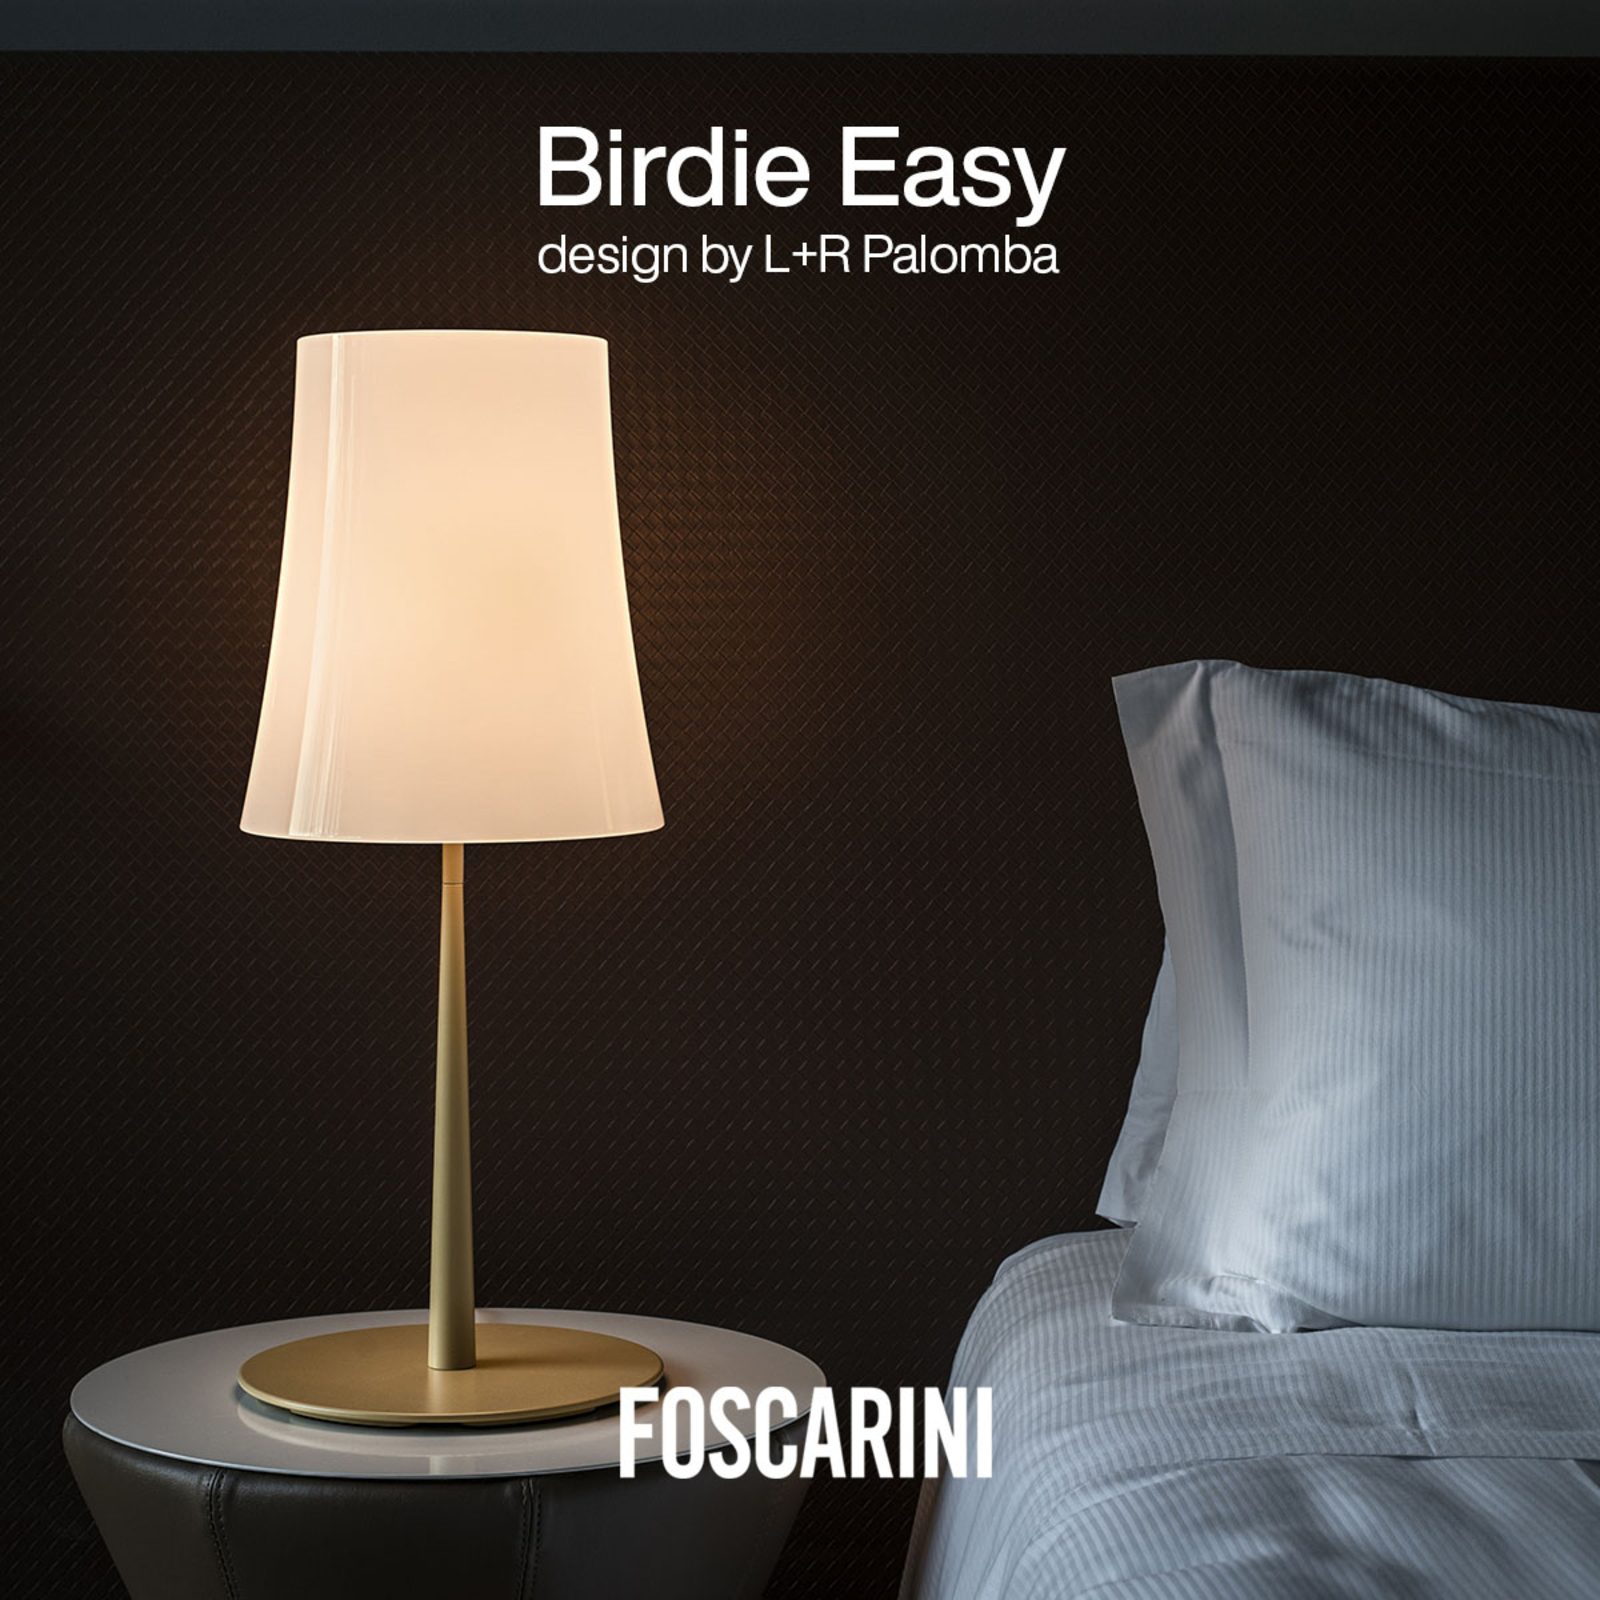 Foscarini Birdie Easy Grande tafellamp zandgeel